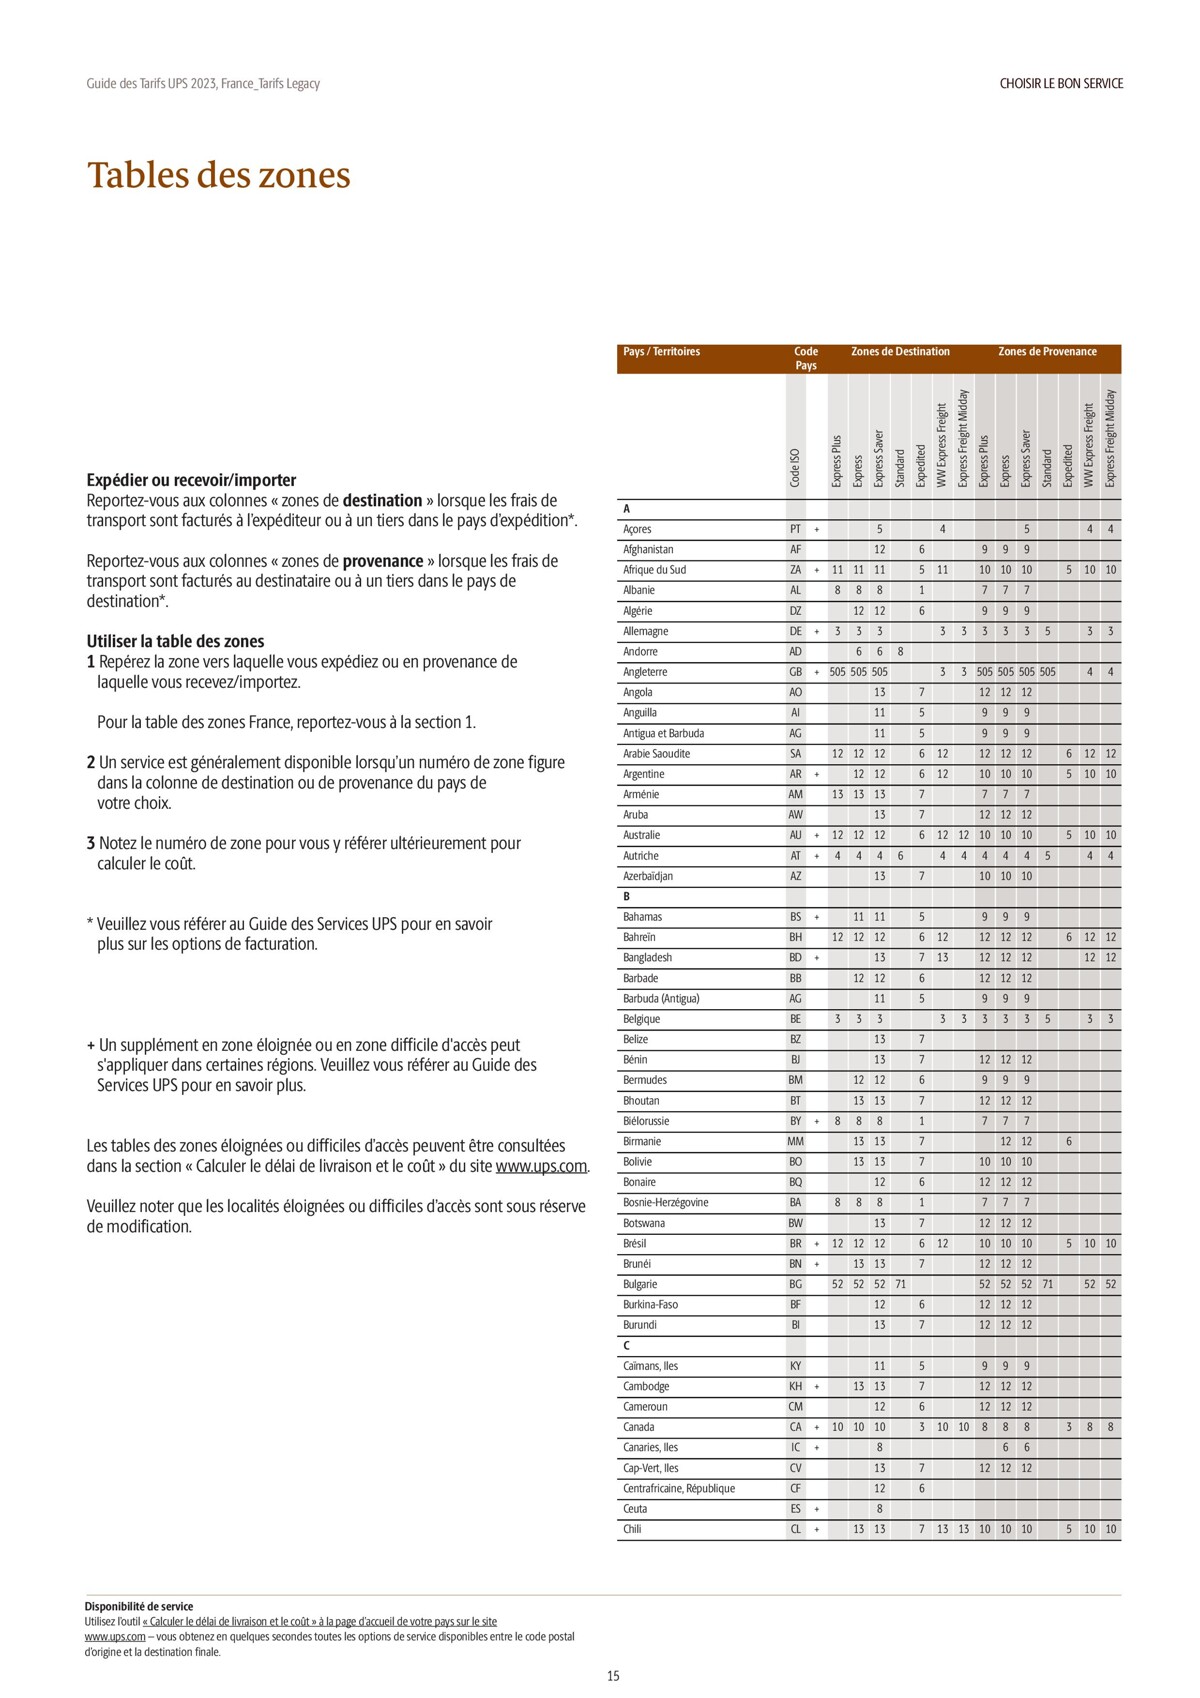 Catalogue Guide des Tarifs 2023, page 00015